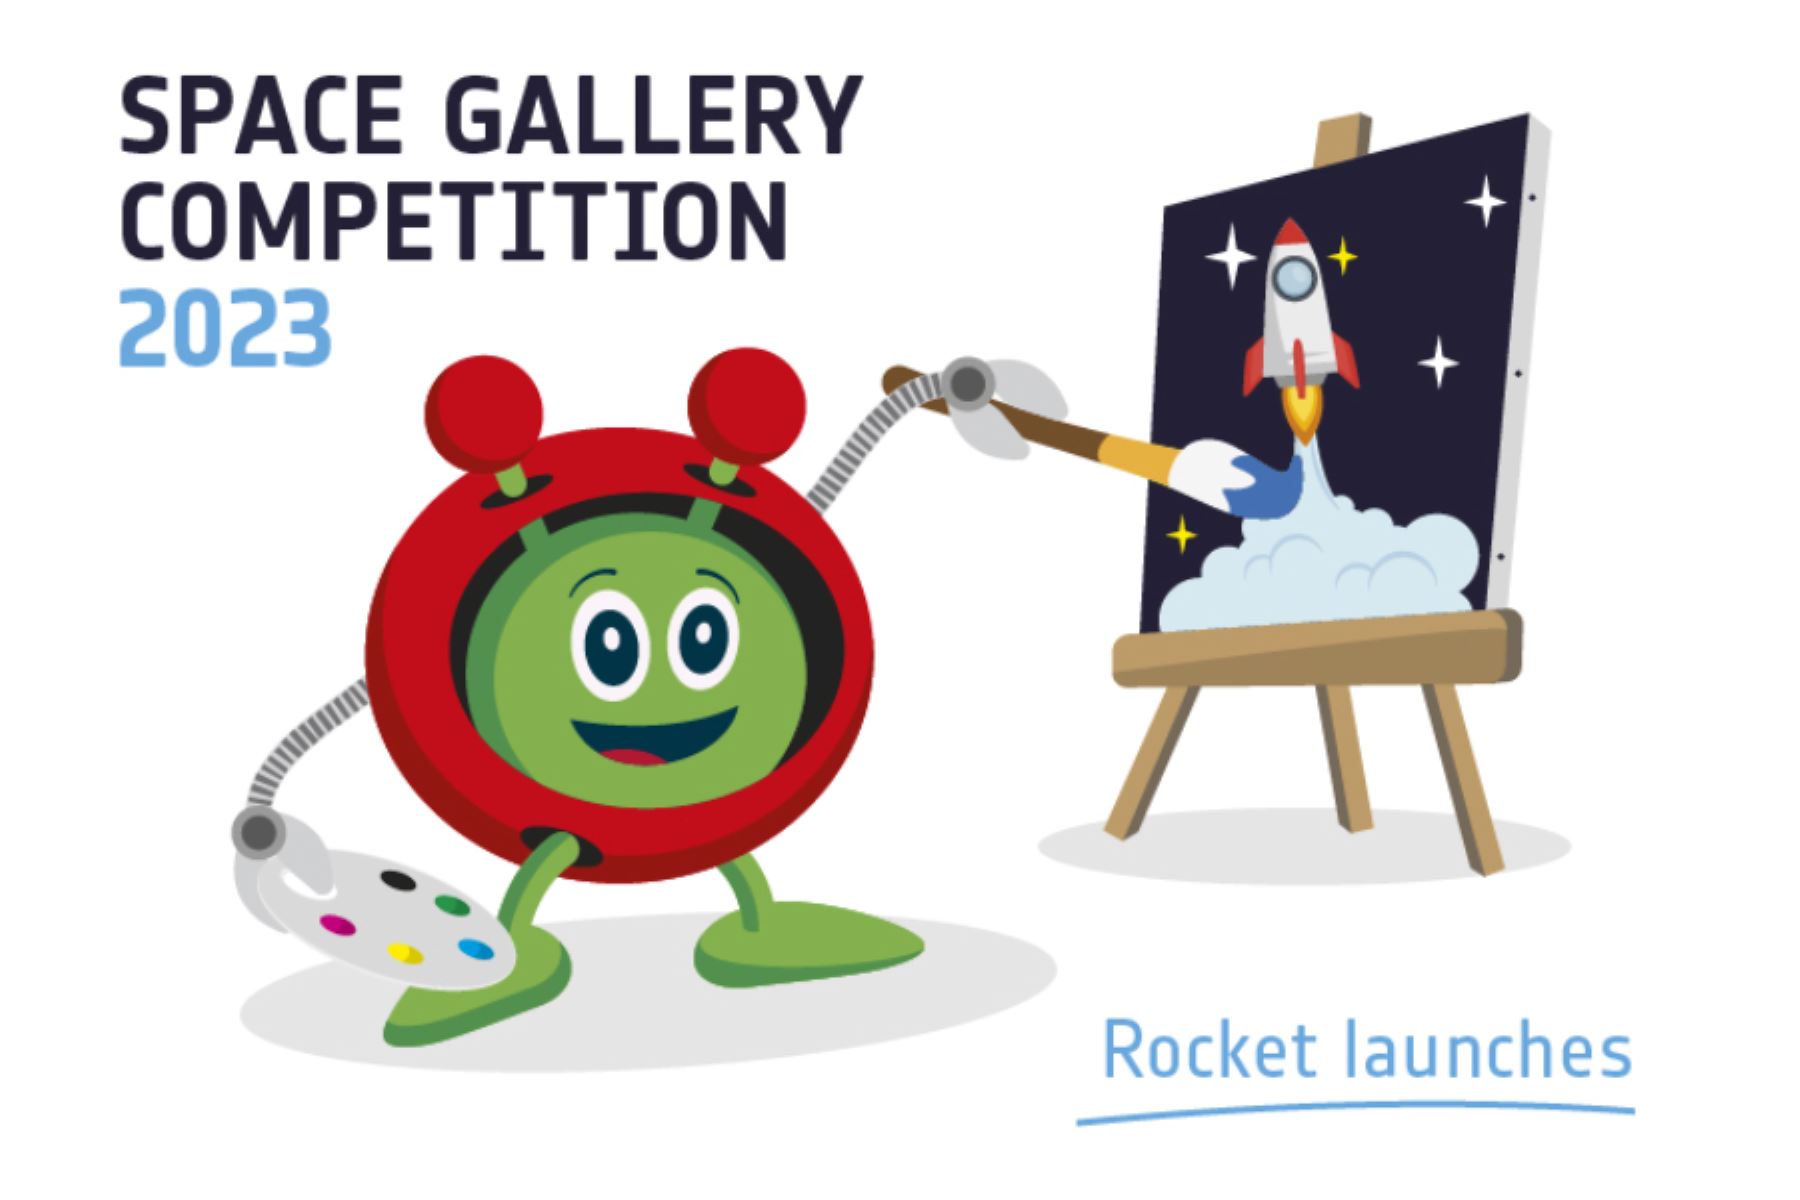 La Agencia Espacial Europea alienta a los más pequeños a ser creativos con sus propuestas artísticas sobre el lanzamiento de cohetes.